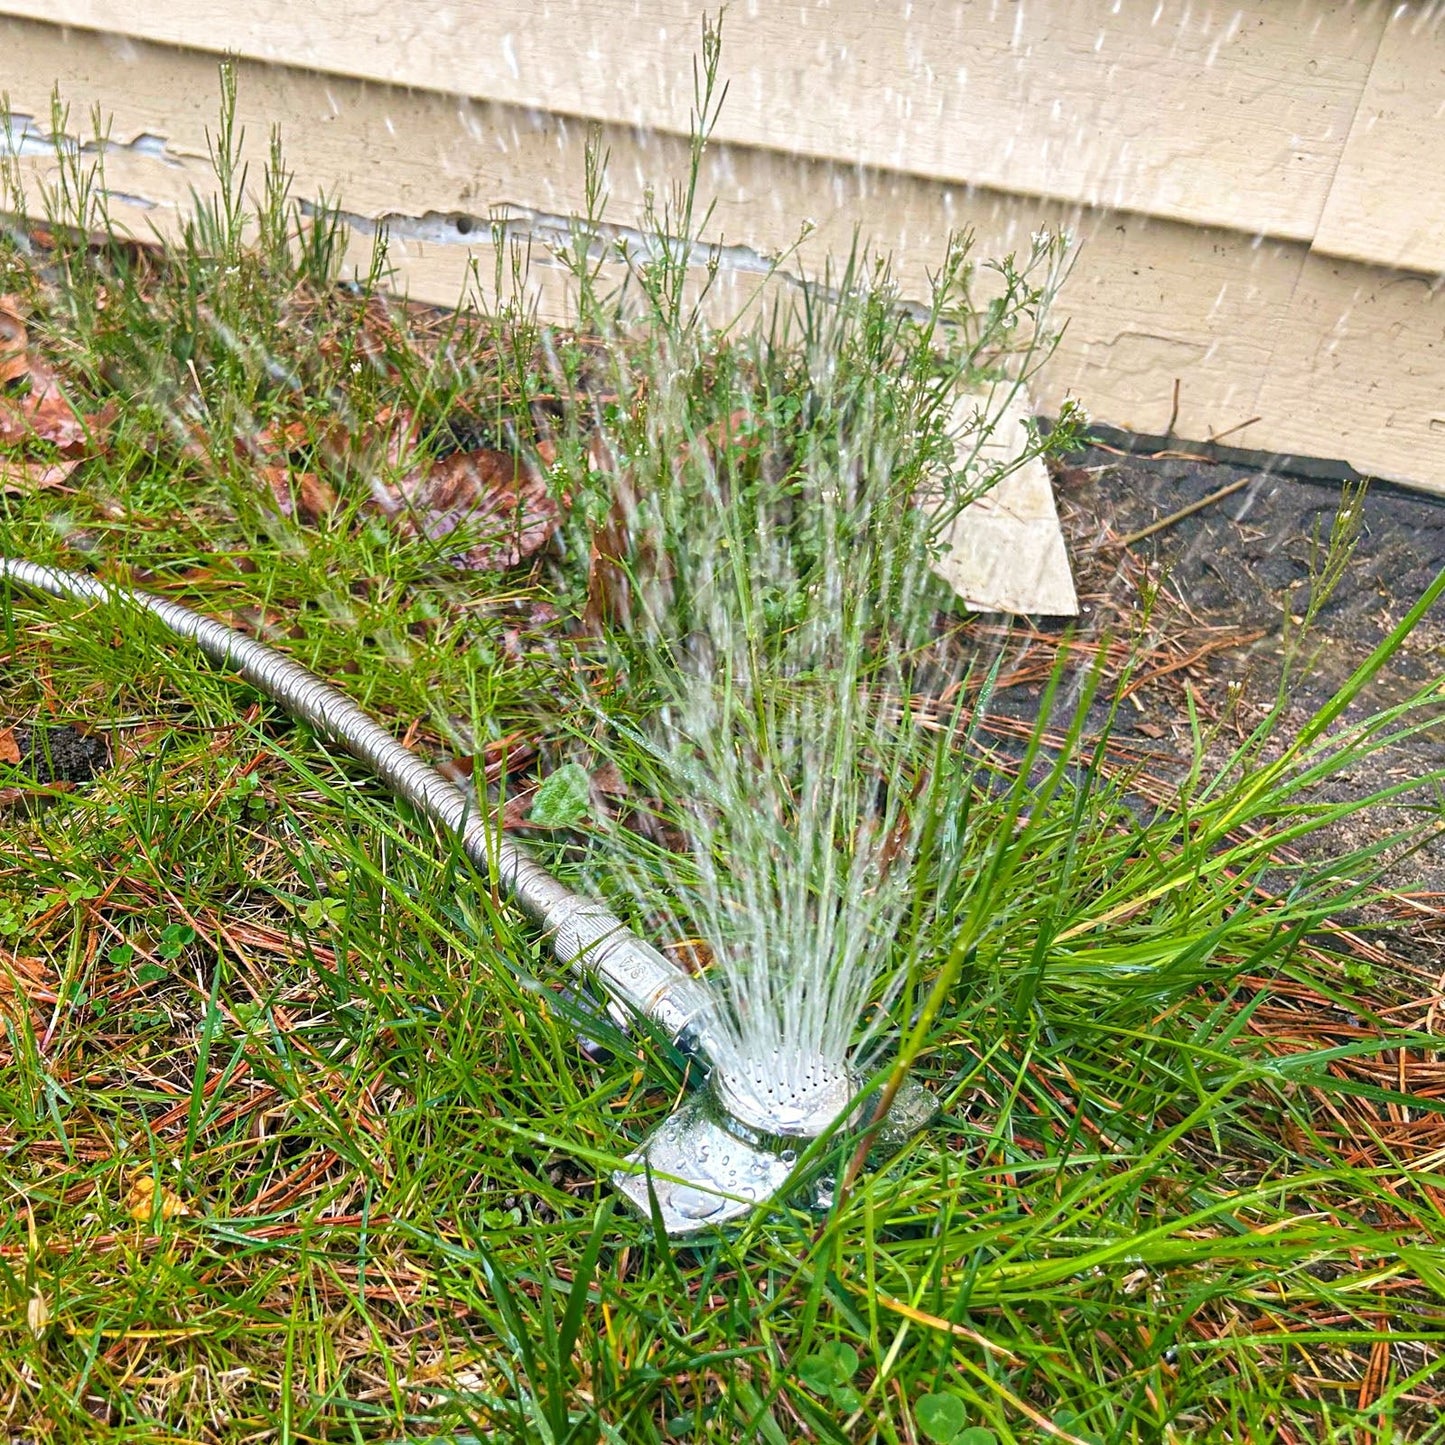 
                  
                    Metal Garden Sprinkler with Gentle Water Flow Up to 30 FT
                  
                